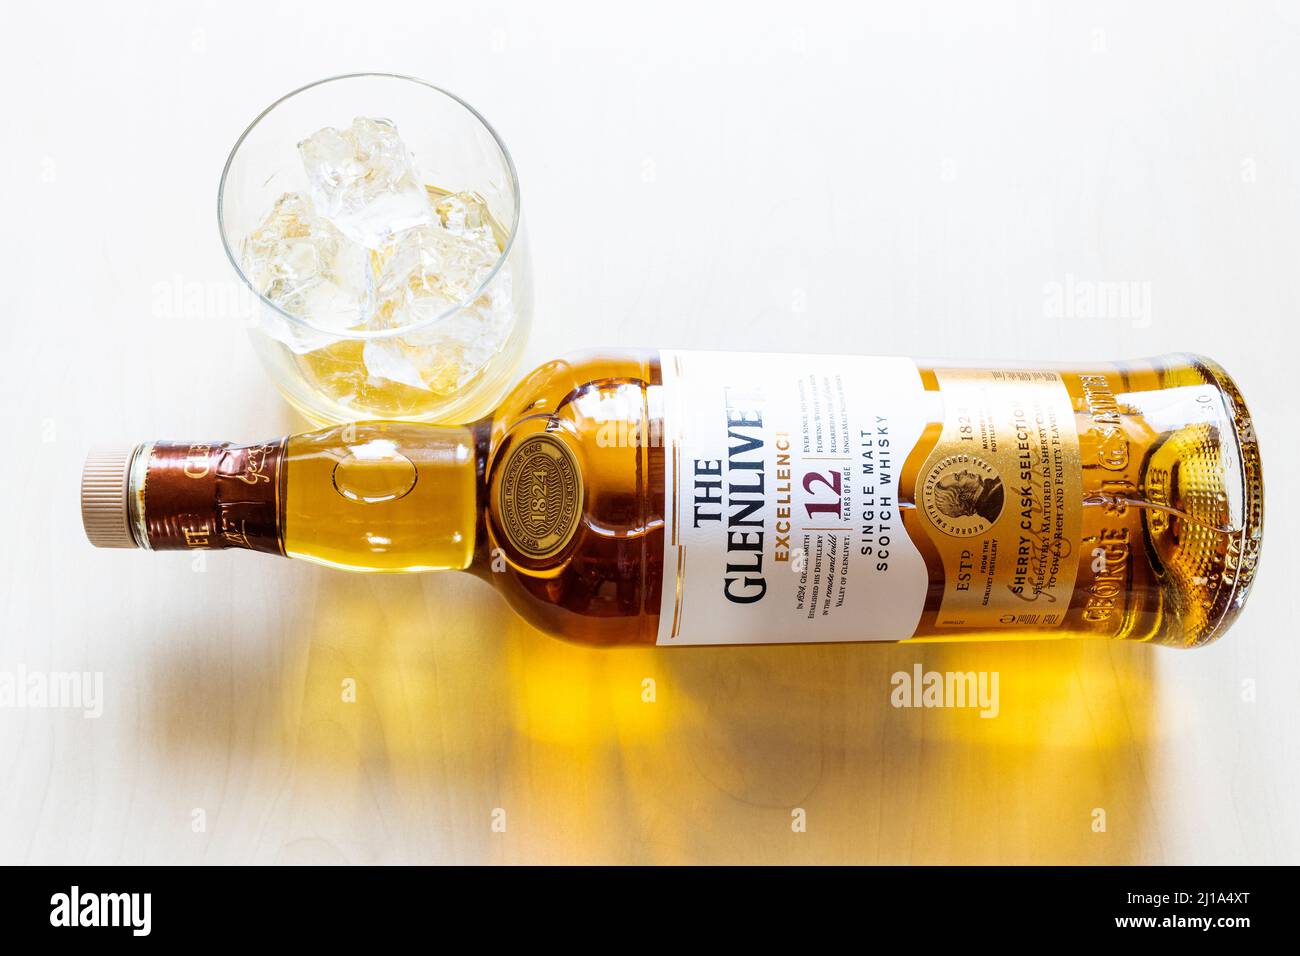 Moskau, Russland - 20. März 2022: Glas- und Liegeflasche von 12 Jahren Glenlivet Single Malt Scotch Whisky auf hellem Tisch. Glenlivet Destillerie war fo Stockfoto